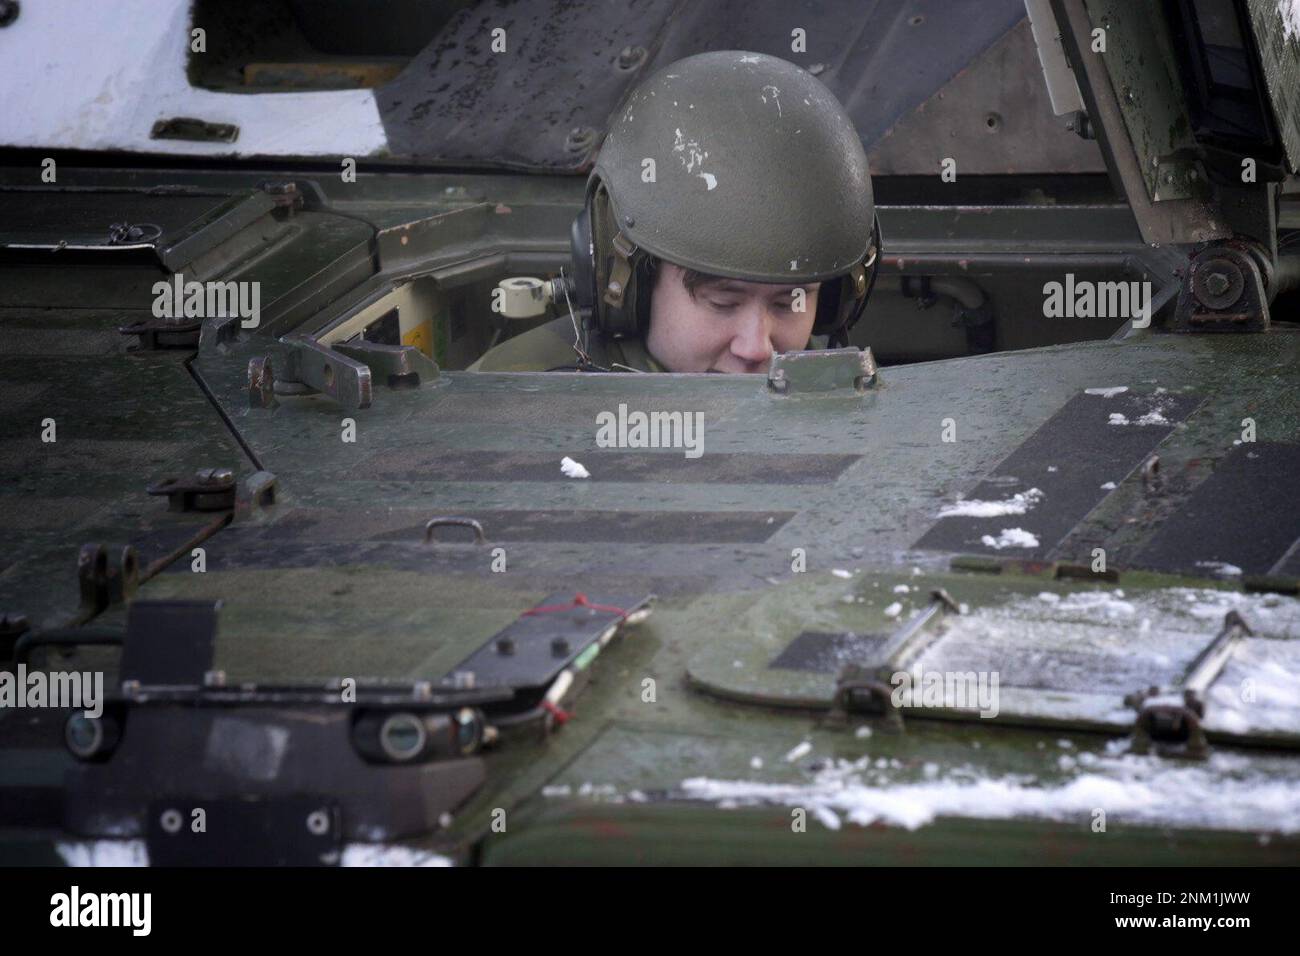 Leopard-2-Panzer anlässlich einer Pressekonferenz im Norrbotten Regiment I19 in Boden Schweden am 24. Februar 2023 anlässlich des ersten Jahrestages der russischen Invasion in der Ukraine. Zusätzliche Unterstützung für die Ukraine wurde angeboten.Foto: Andreas Sjolin / TT / Code 10510 Stockfoto